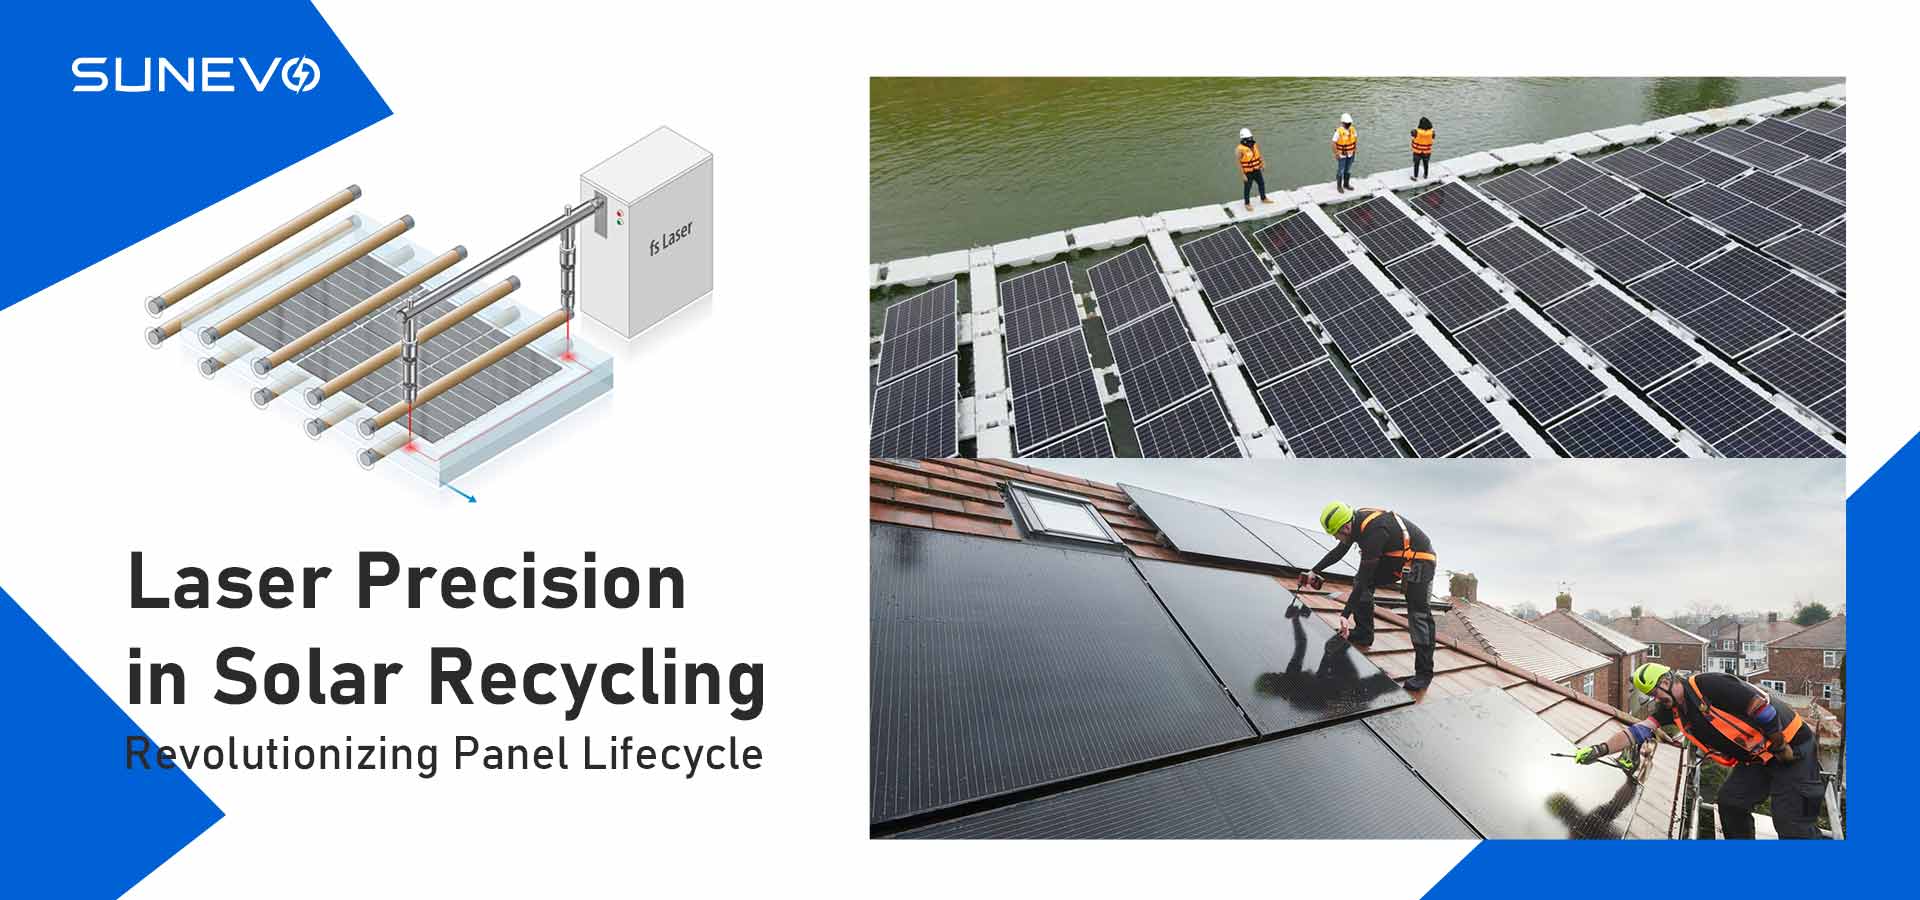 Laserpräzision im Solarrecycling: Revolutionierung des Panel-Lebenszyklus